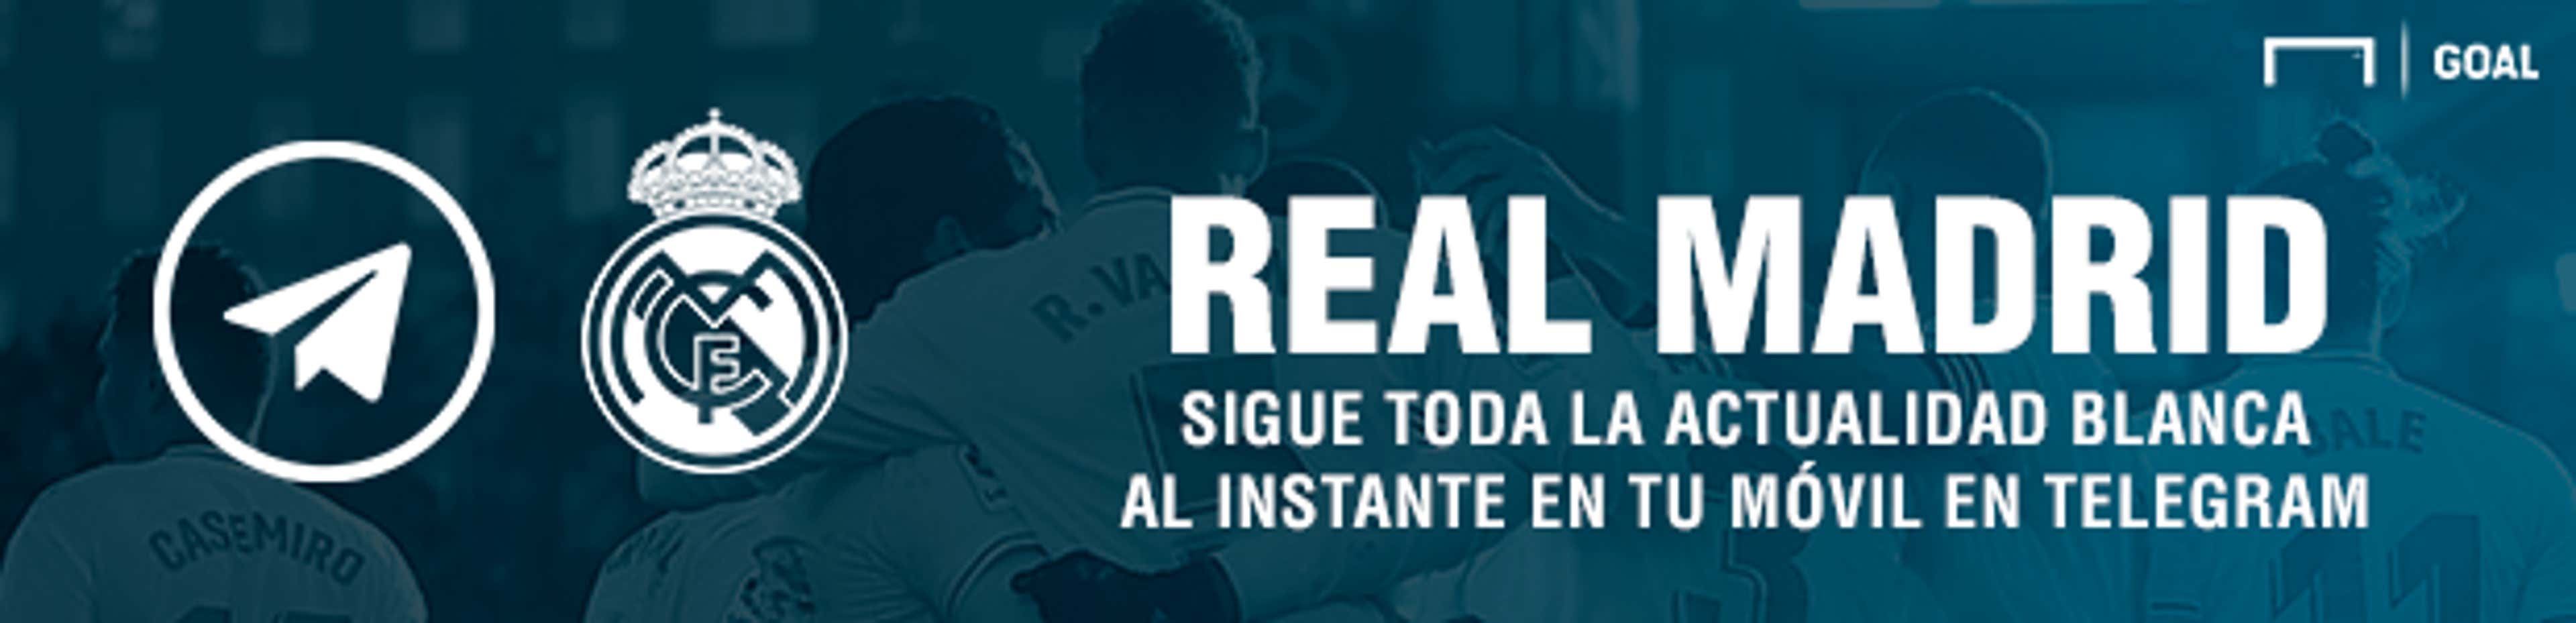 Banner Telegram Real Madrid